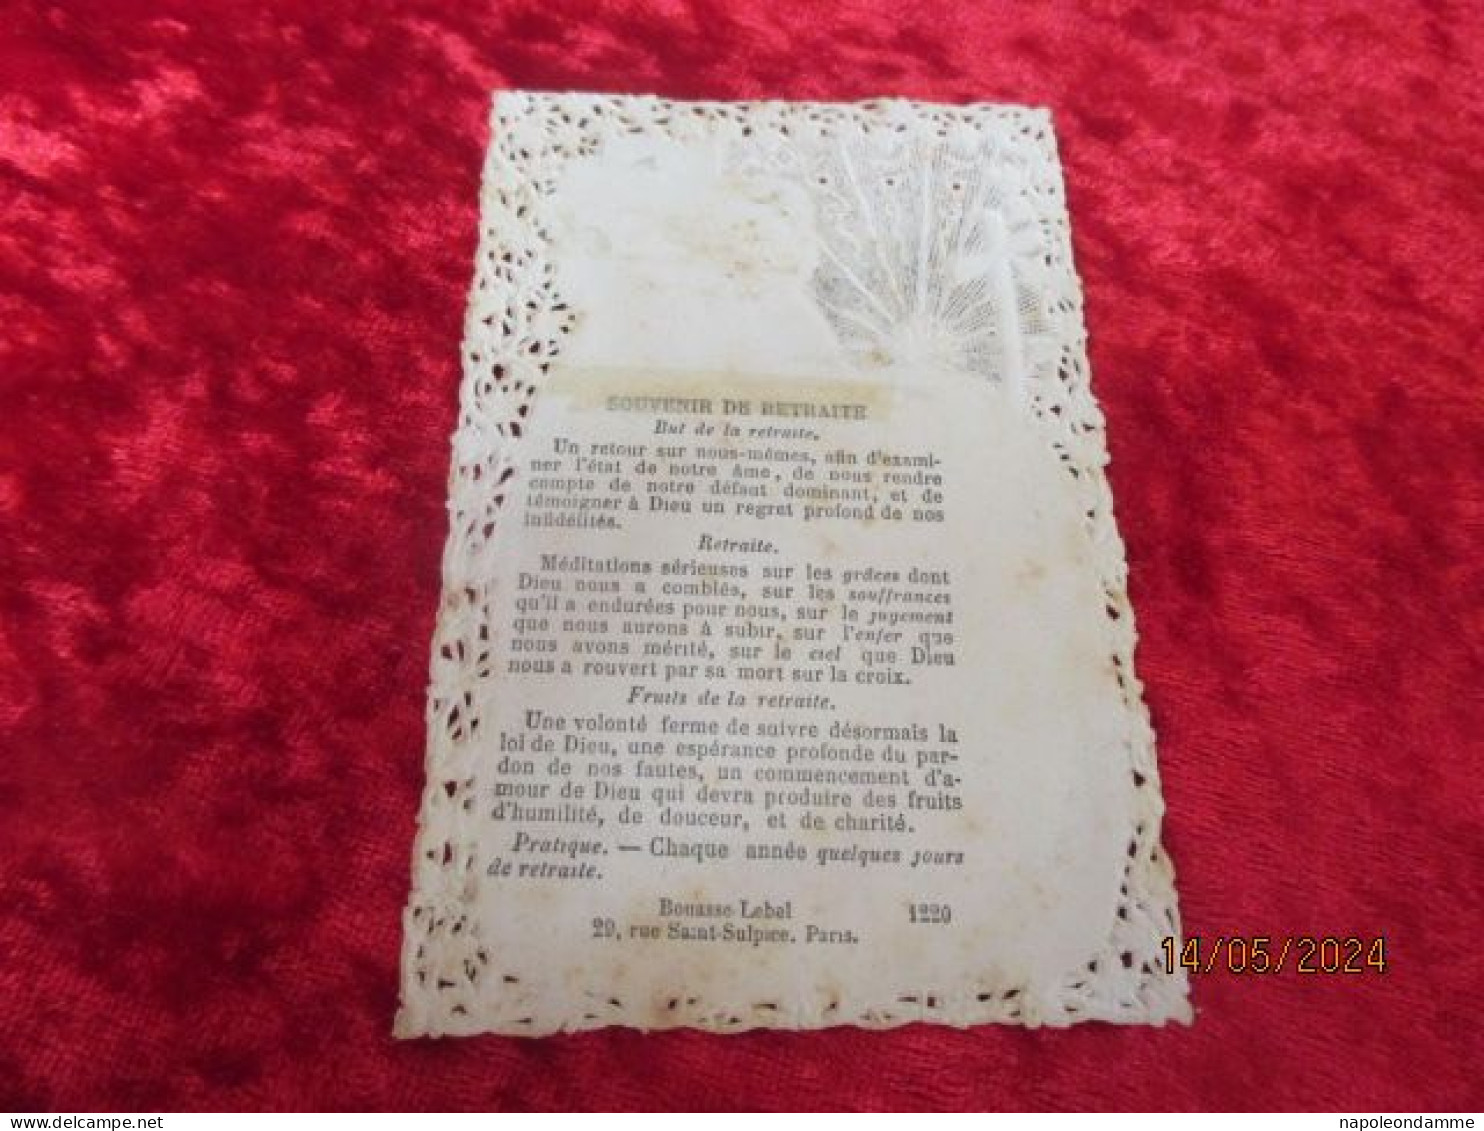 Holy Card Lace,kanten Prentje, Santino, Souvenir De Retraite Edit Bouasse Lebel Nr 1220 - Images Religieuses